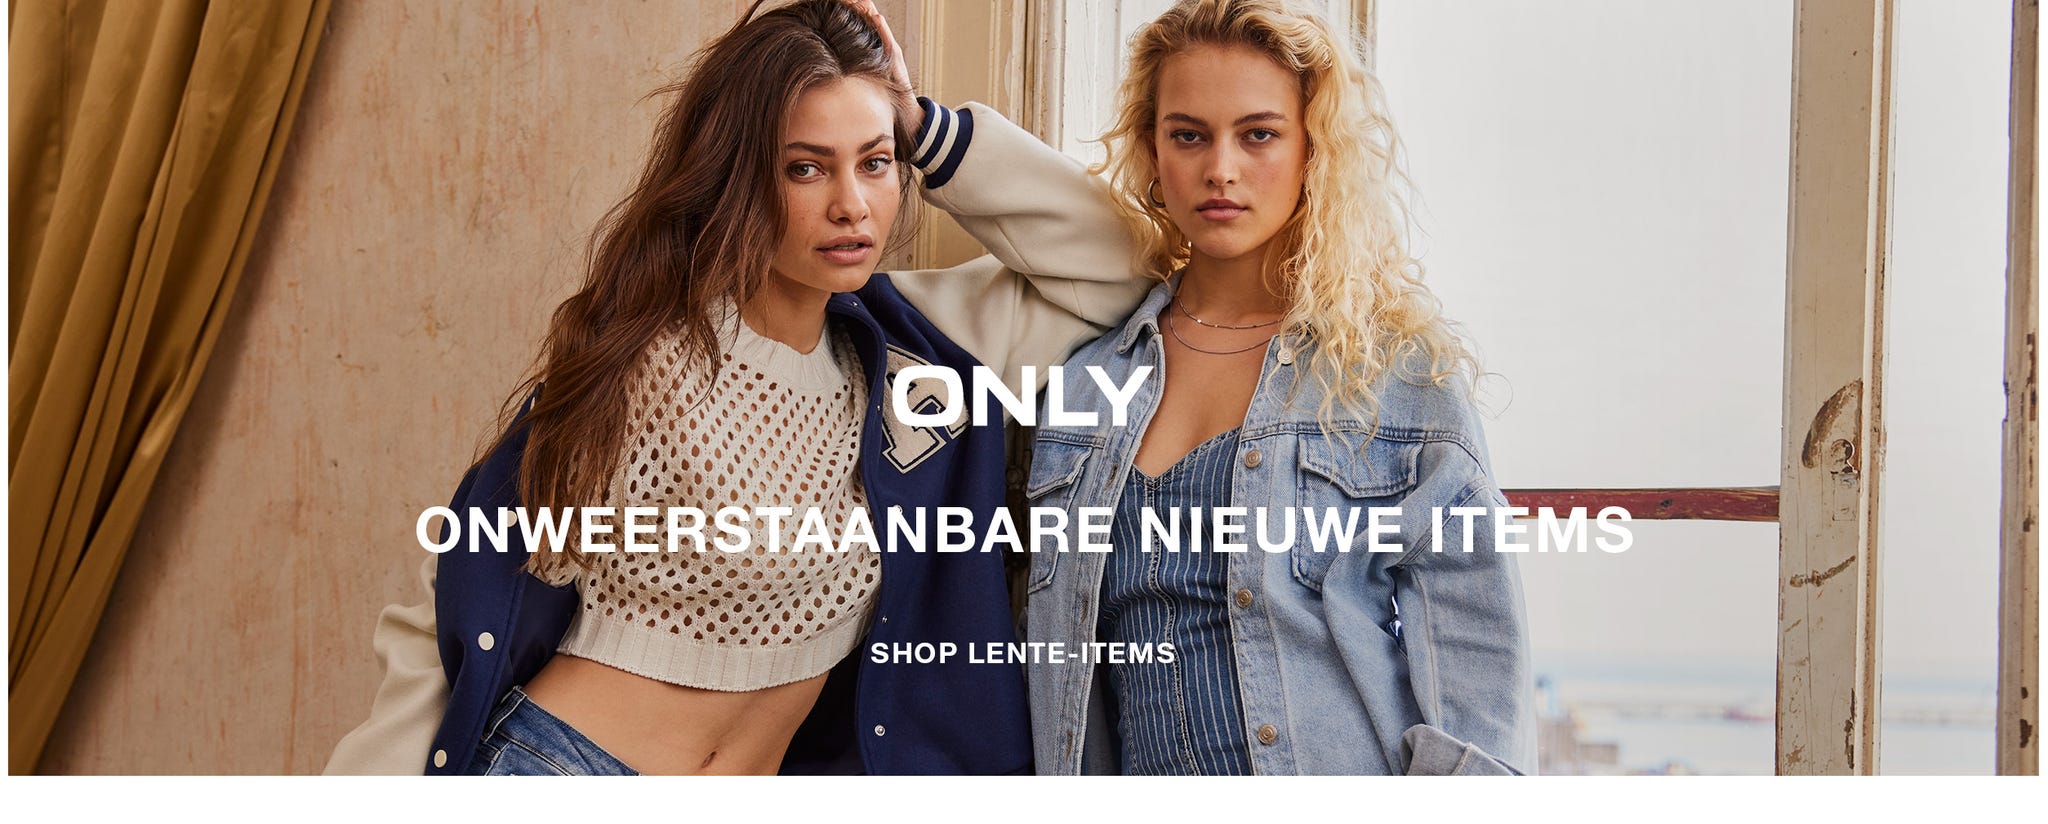 on-storefront-01-nl.jpg